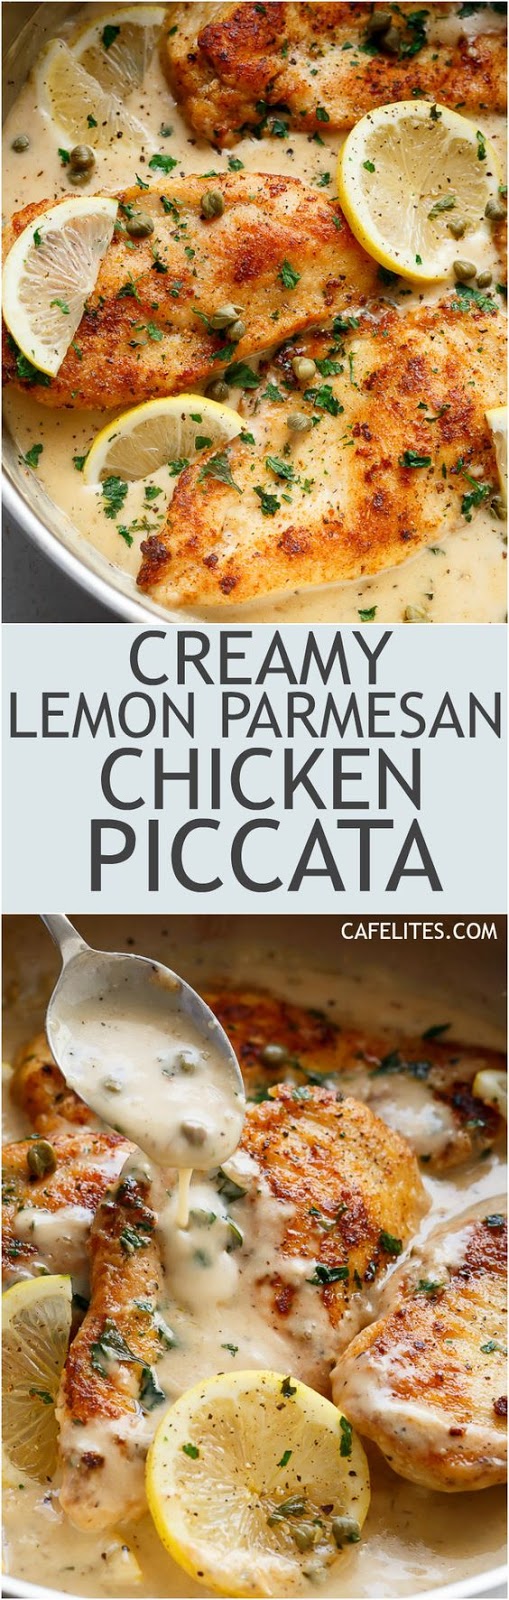 Creamy Lemon Parmesan Chicken Piccata